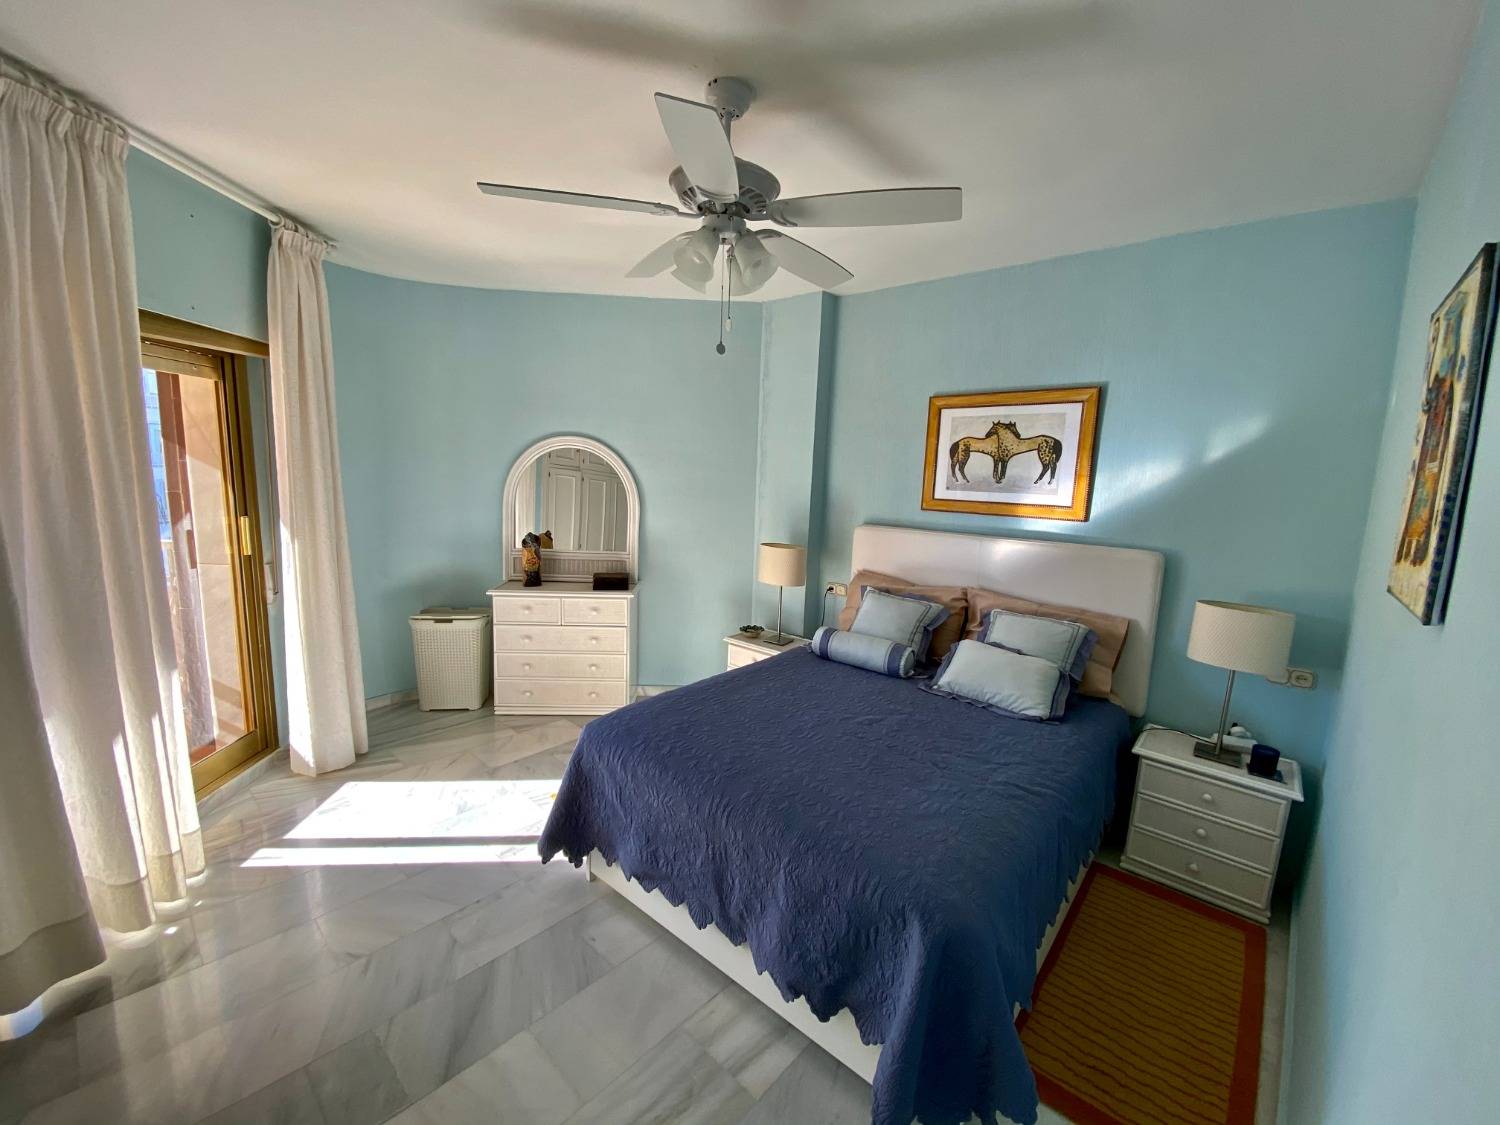 Det er dit strandhus i Fuengirola, 3 soveværelser, wifi, aircondition, nyd det.